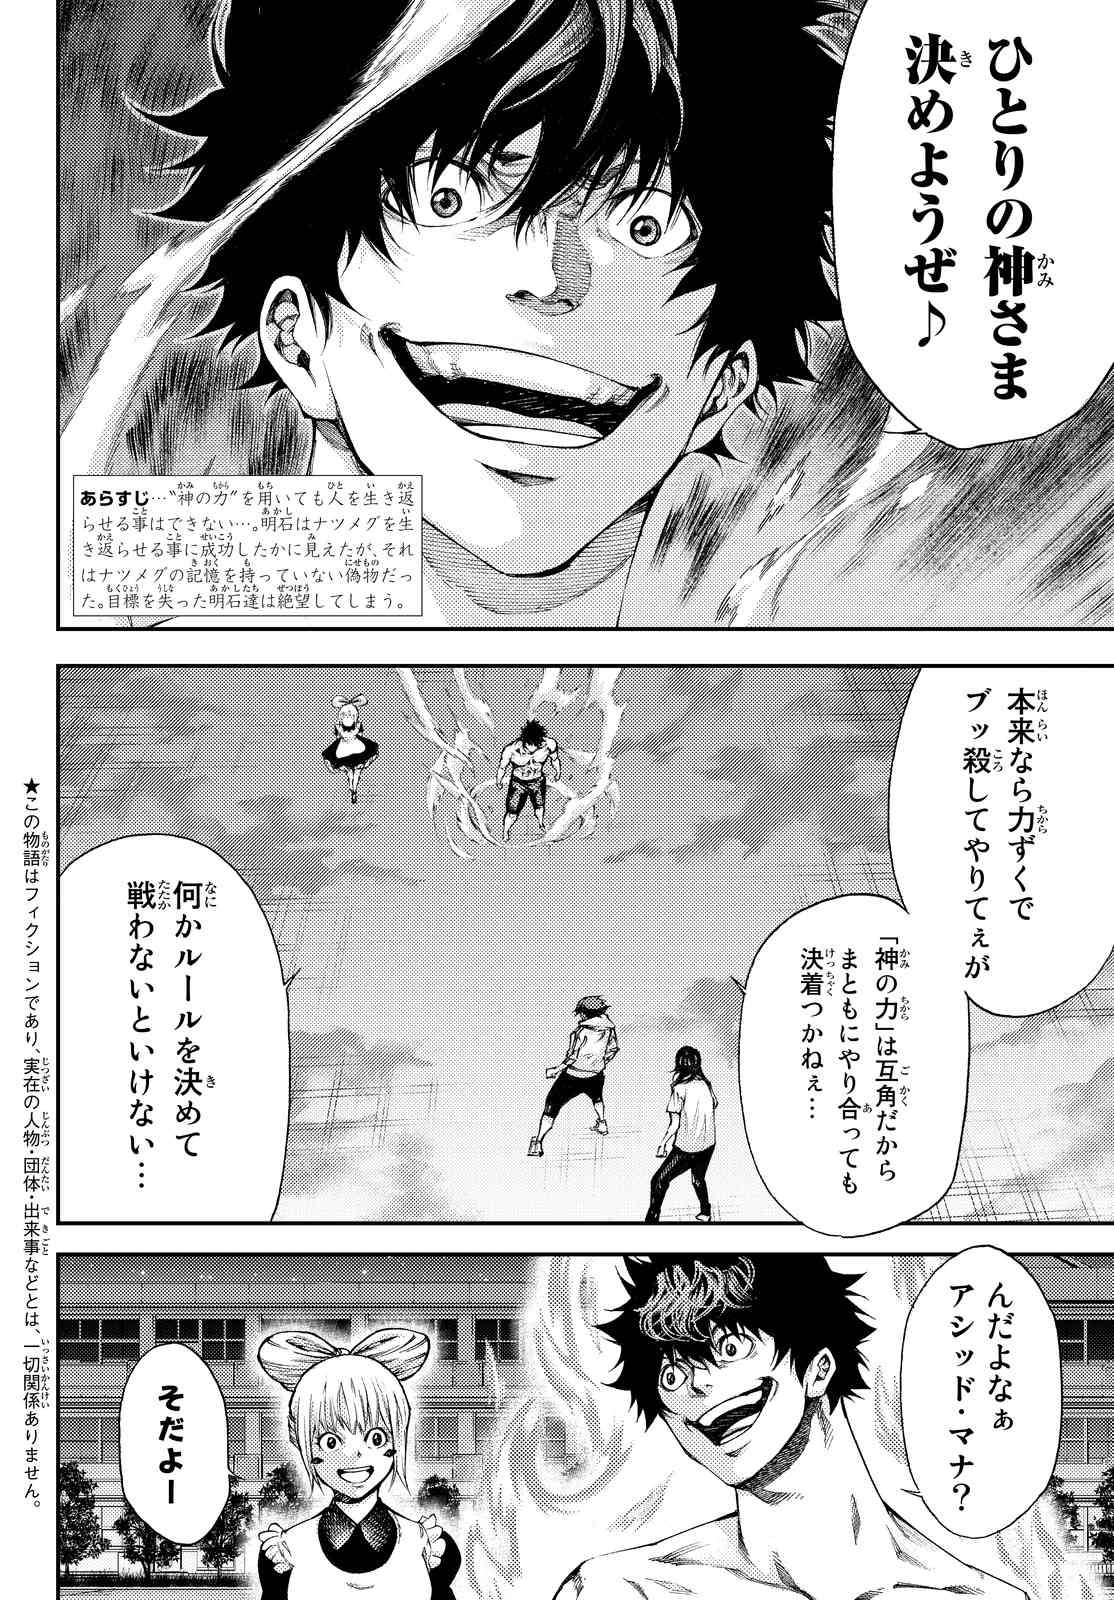 Kamisama_no_Ituori - Chapter 181 - Page 2